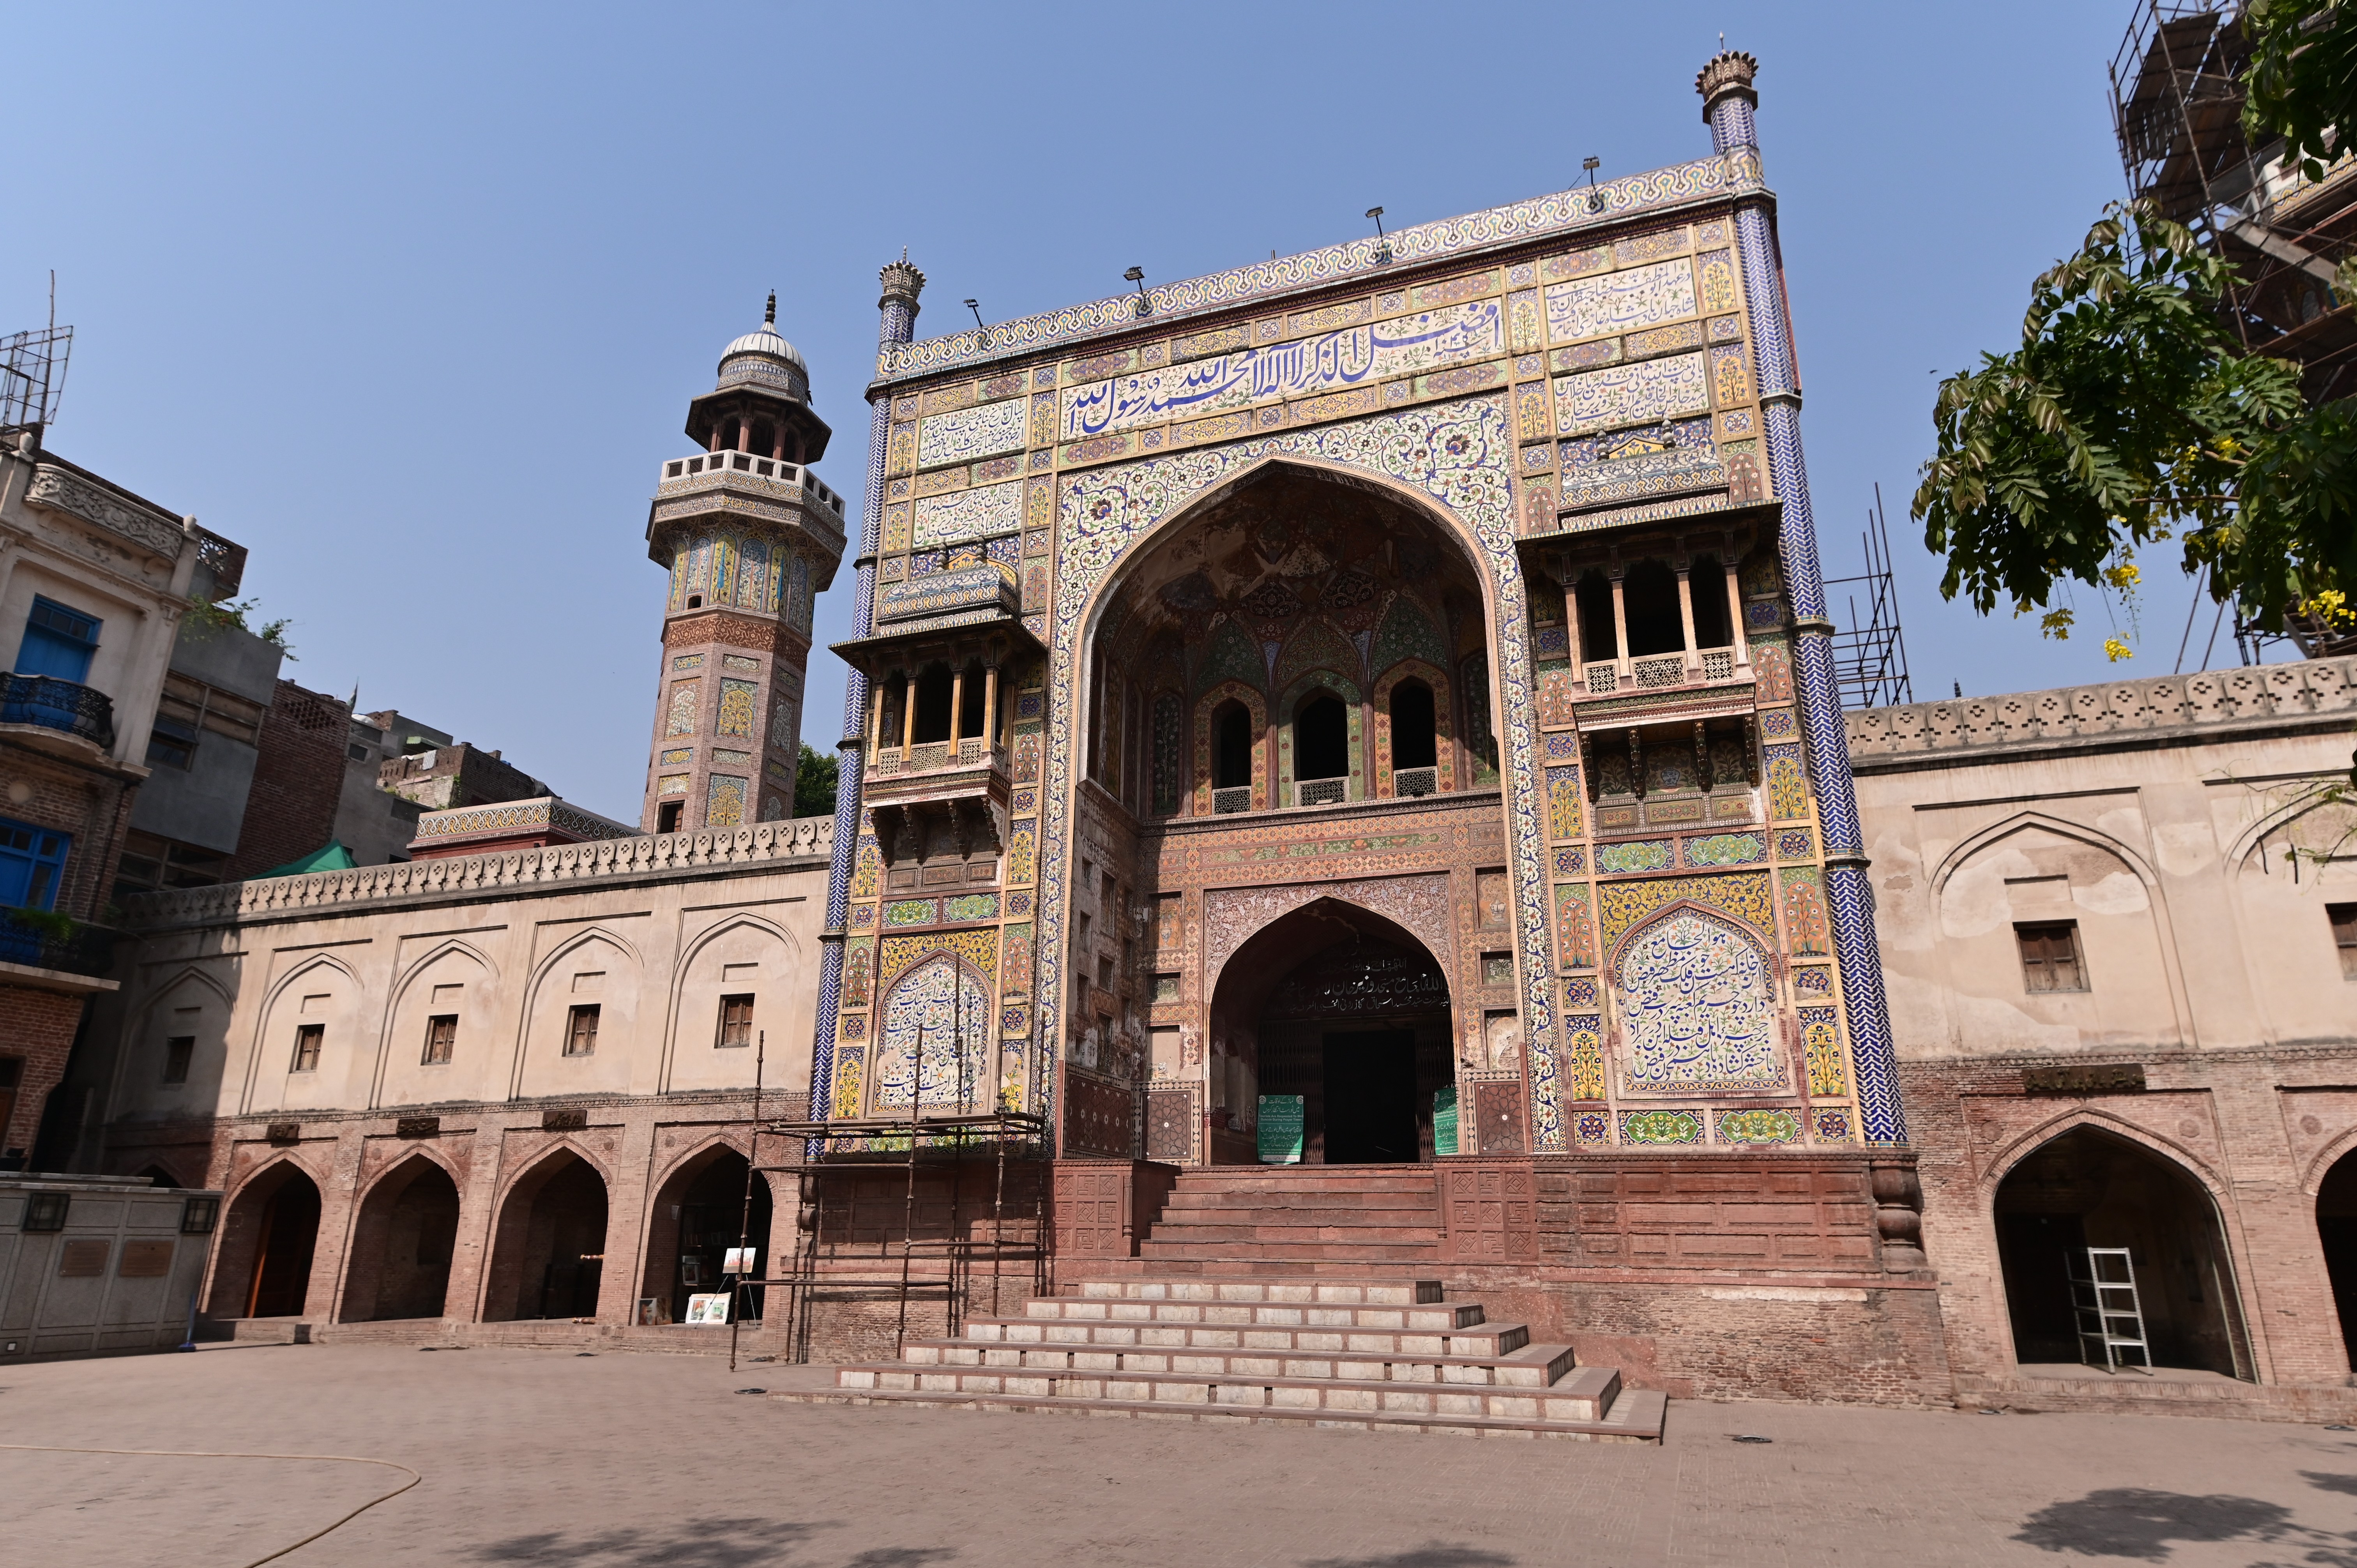 Wazir Khan mosque